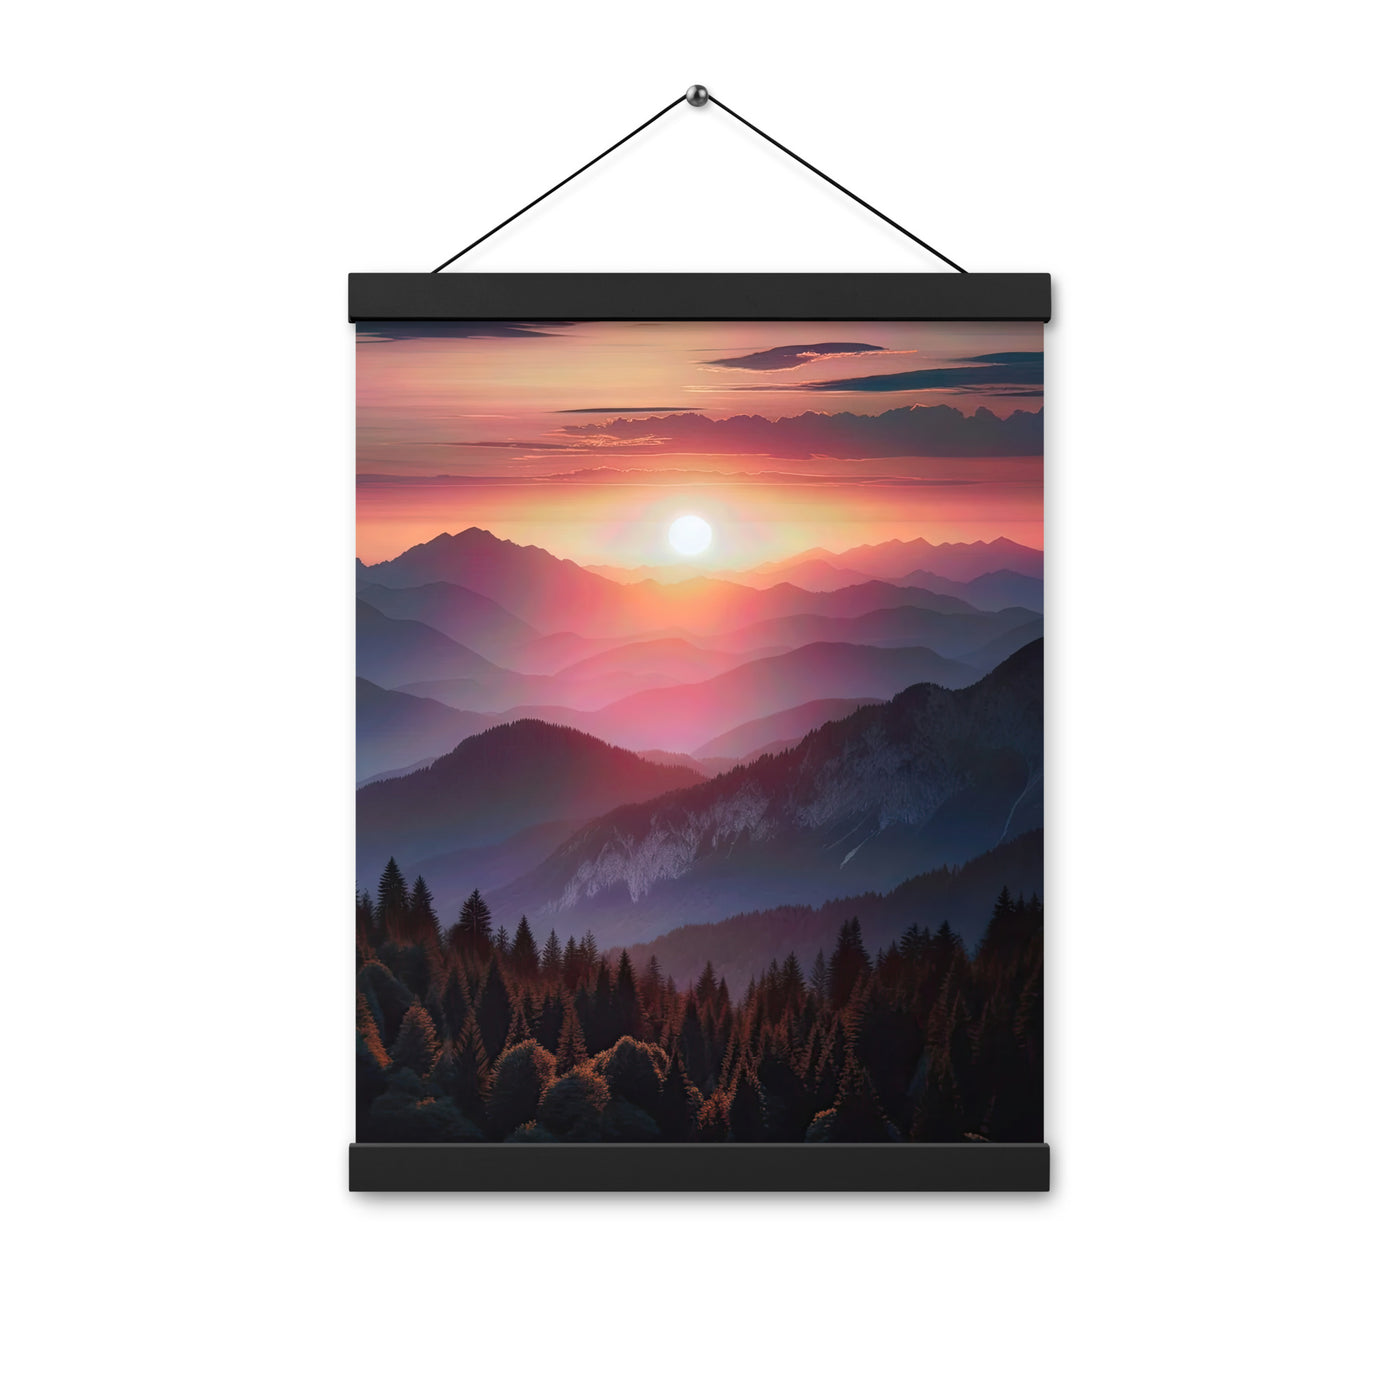 Foto der Alpenwildnis beim Sonnenuntergang, Himmel in warmen Orange-Tönen - Premium Poster mit Aufhängung berge xxx yyy zzz 30.5 x 40.6 cm